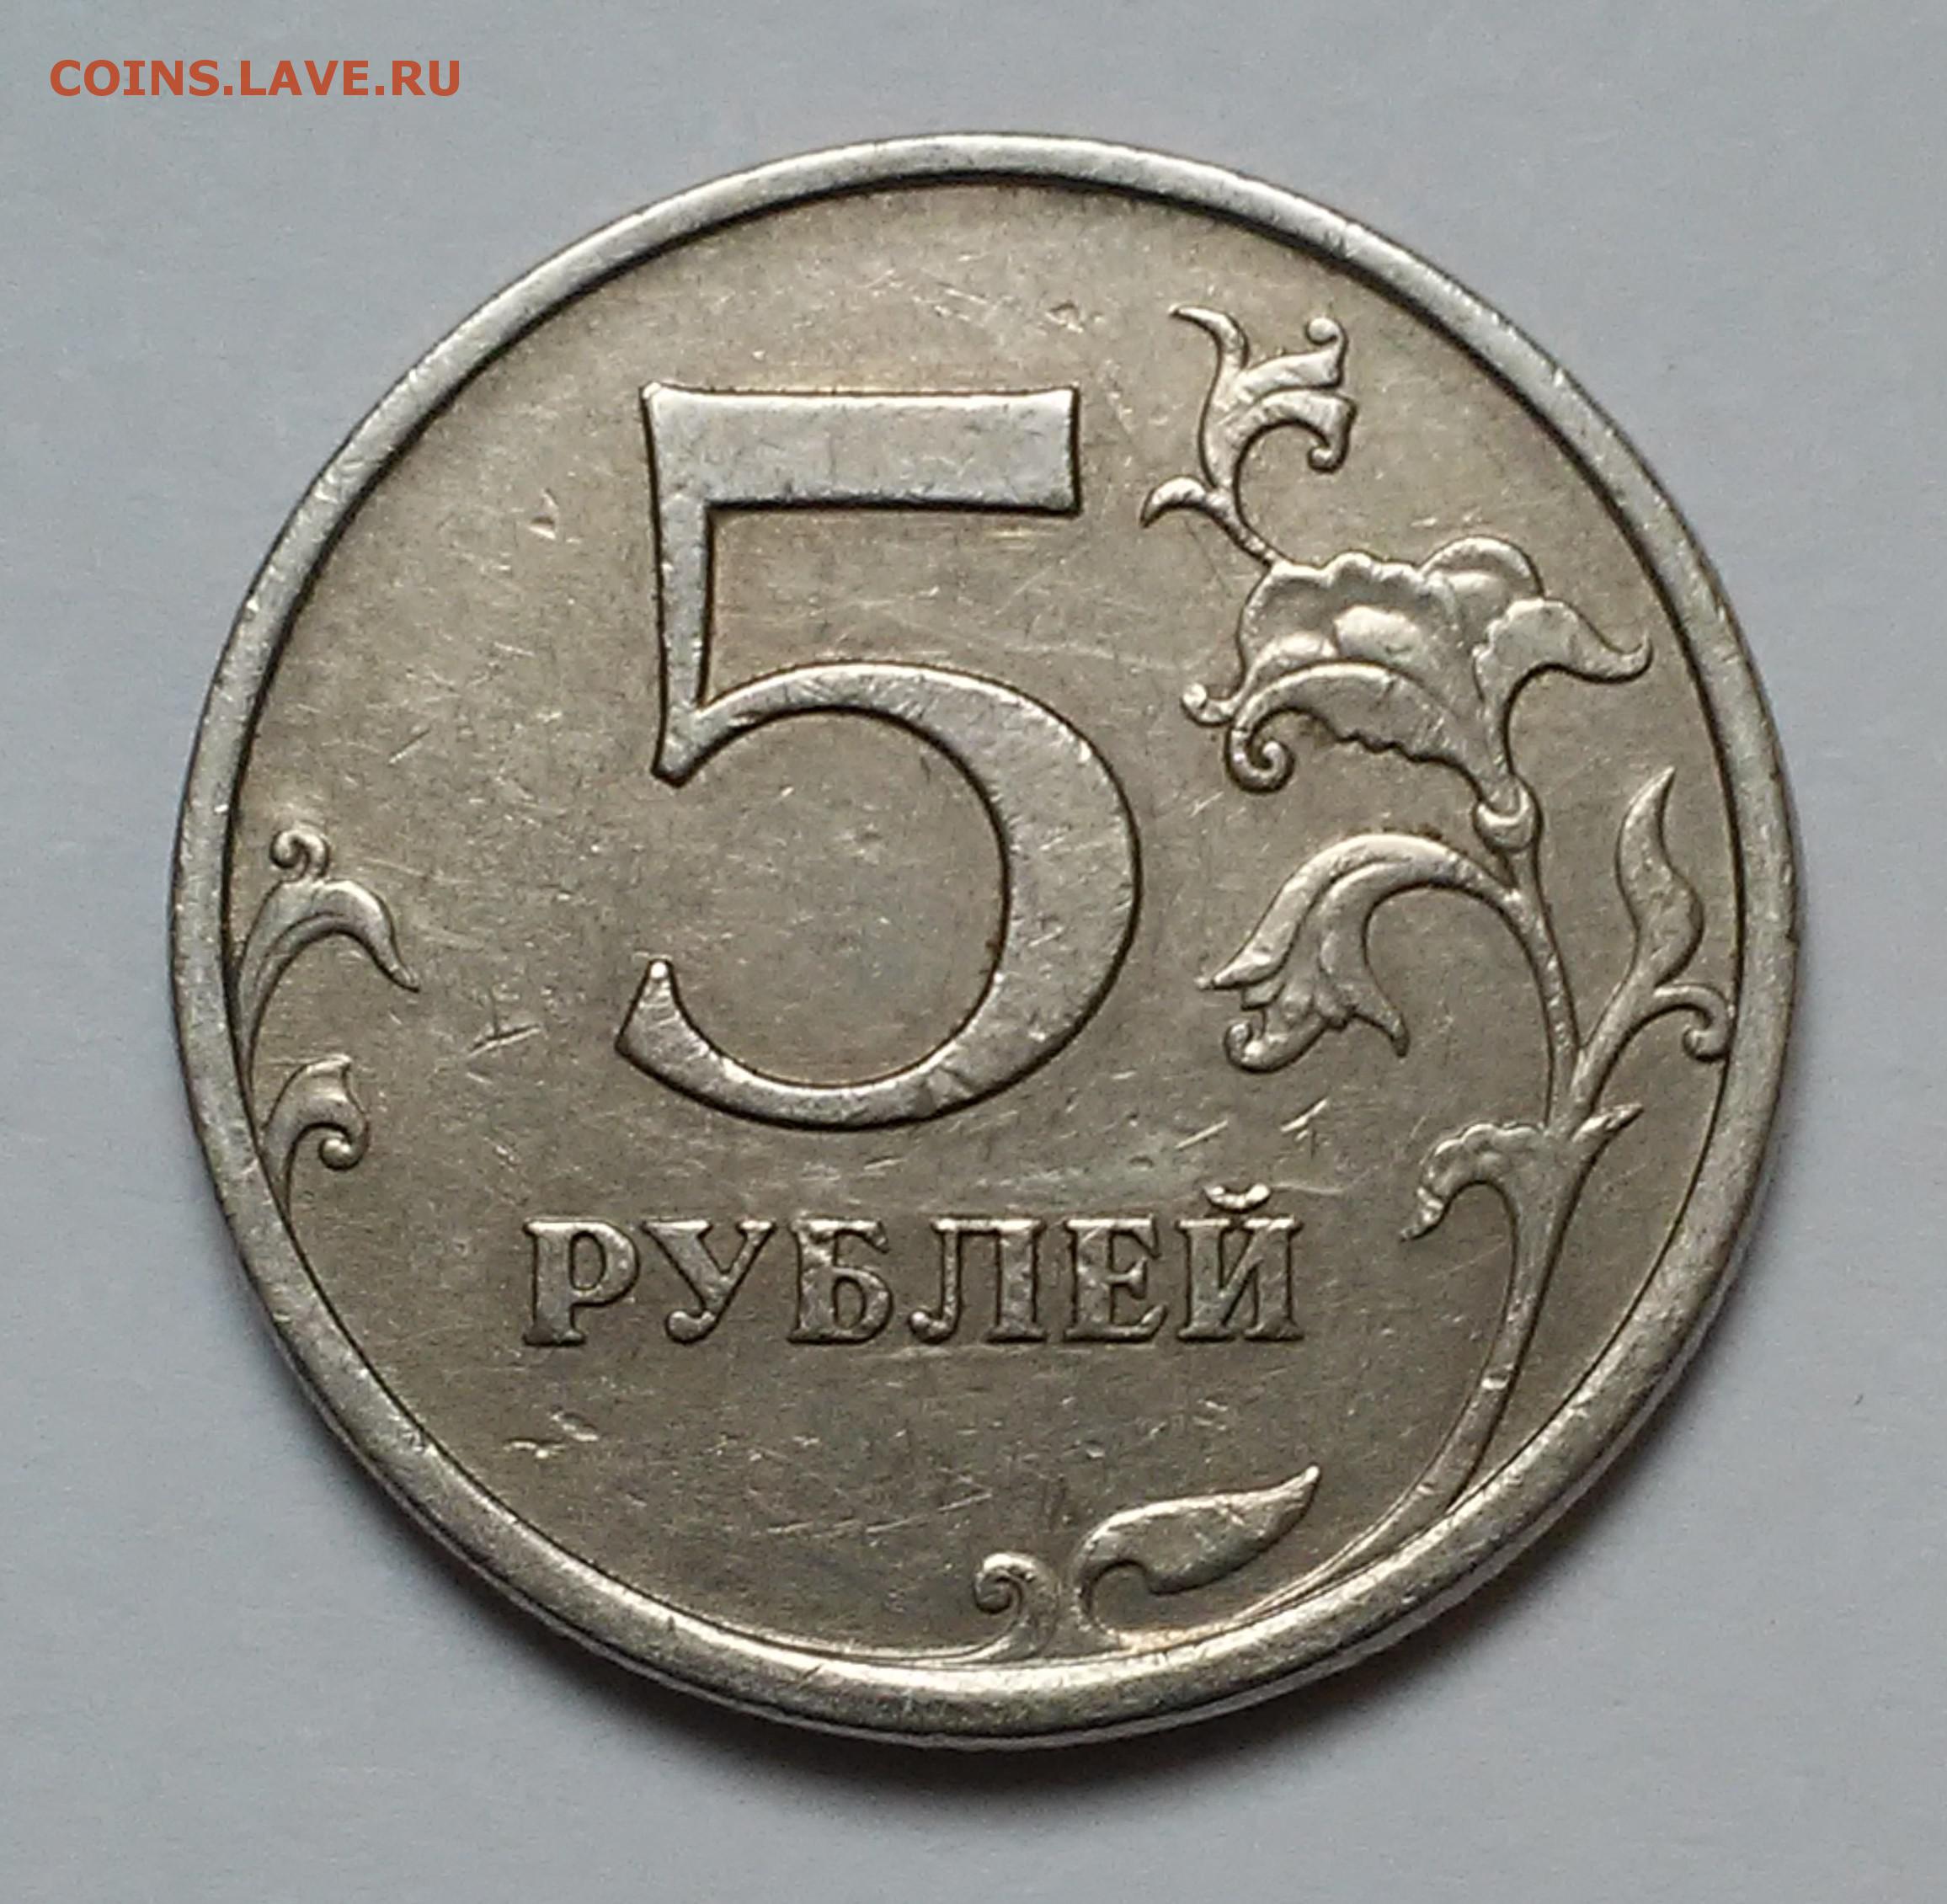 75 рублей 40. Монета 5 рублей 2003 года. Есть 5 рублей. Пять и десять рублей 1997 года.